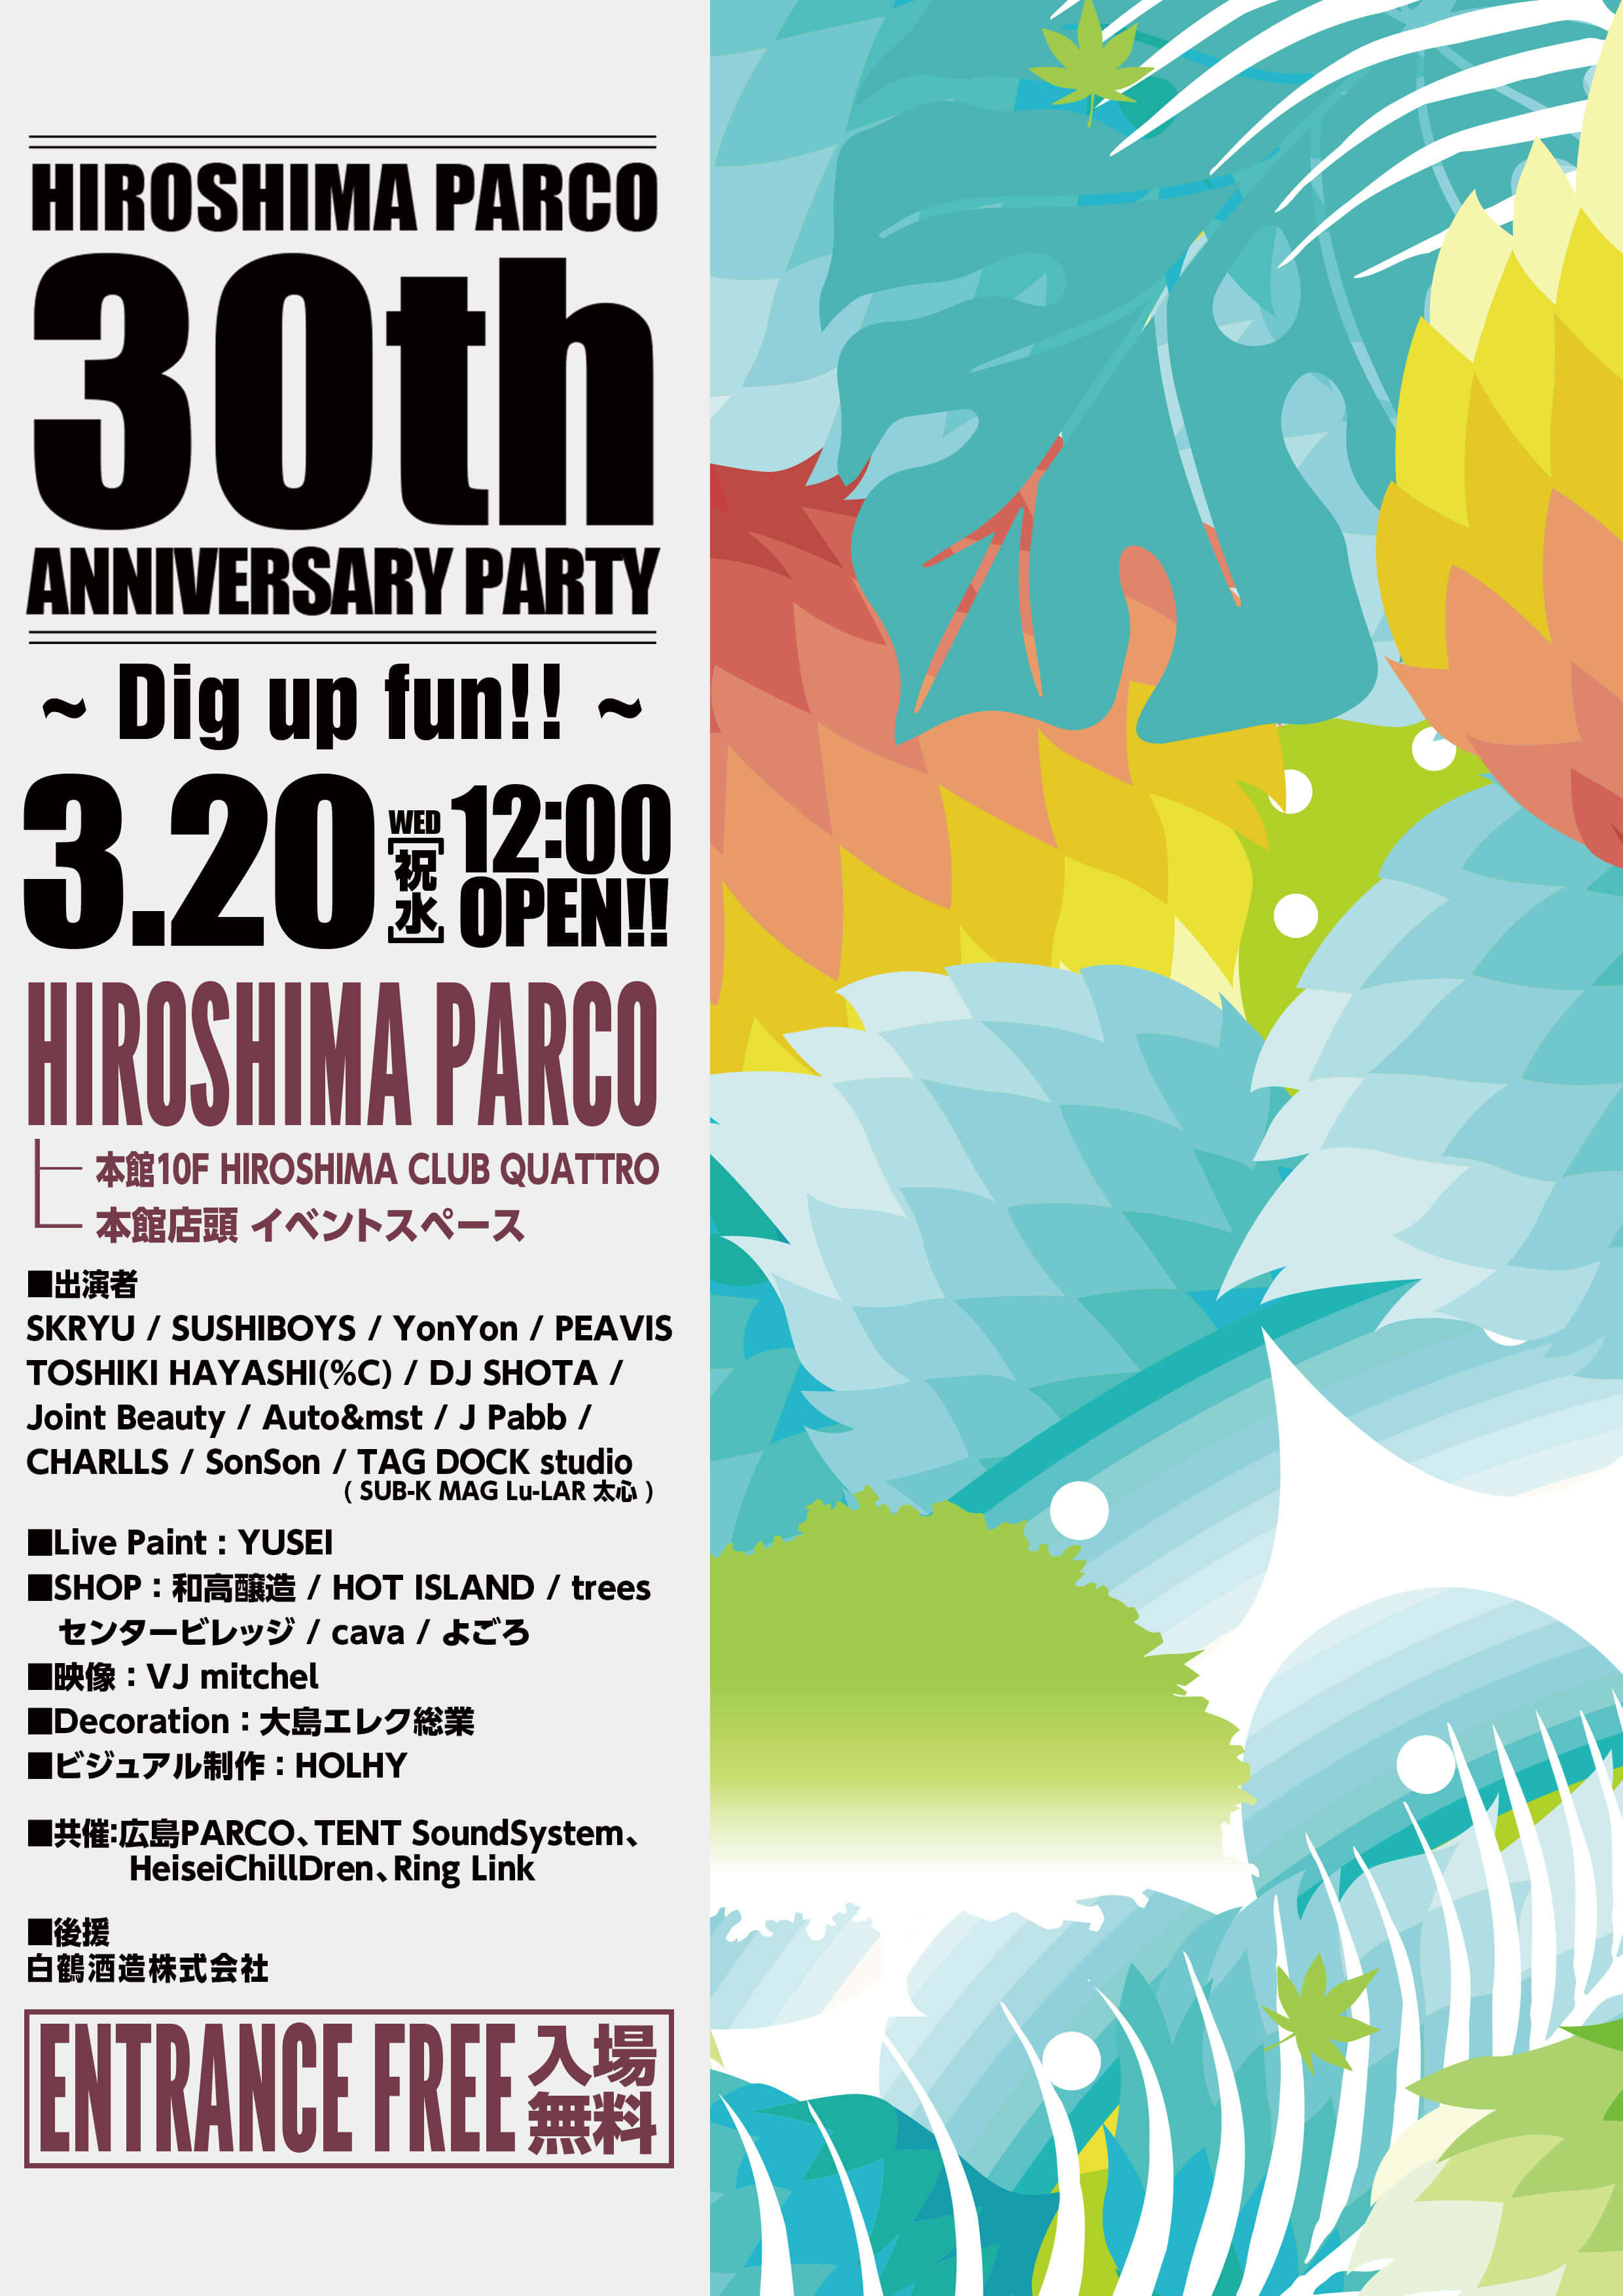 HIROSHIMA PARCO 30th ANNIVERSARY PARTY のフライヤー